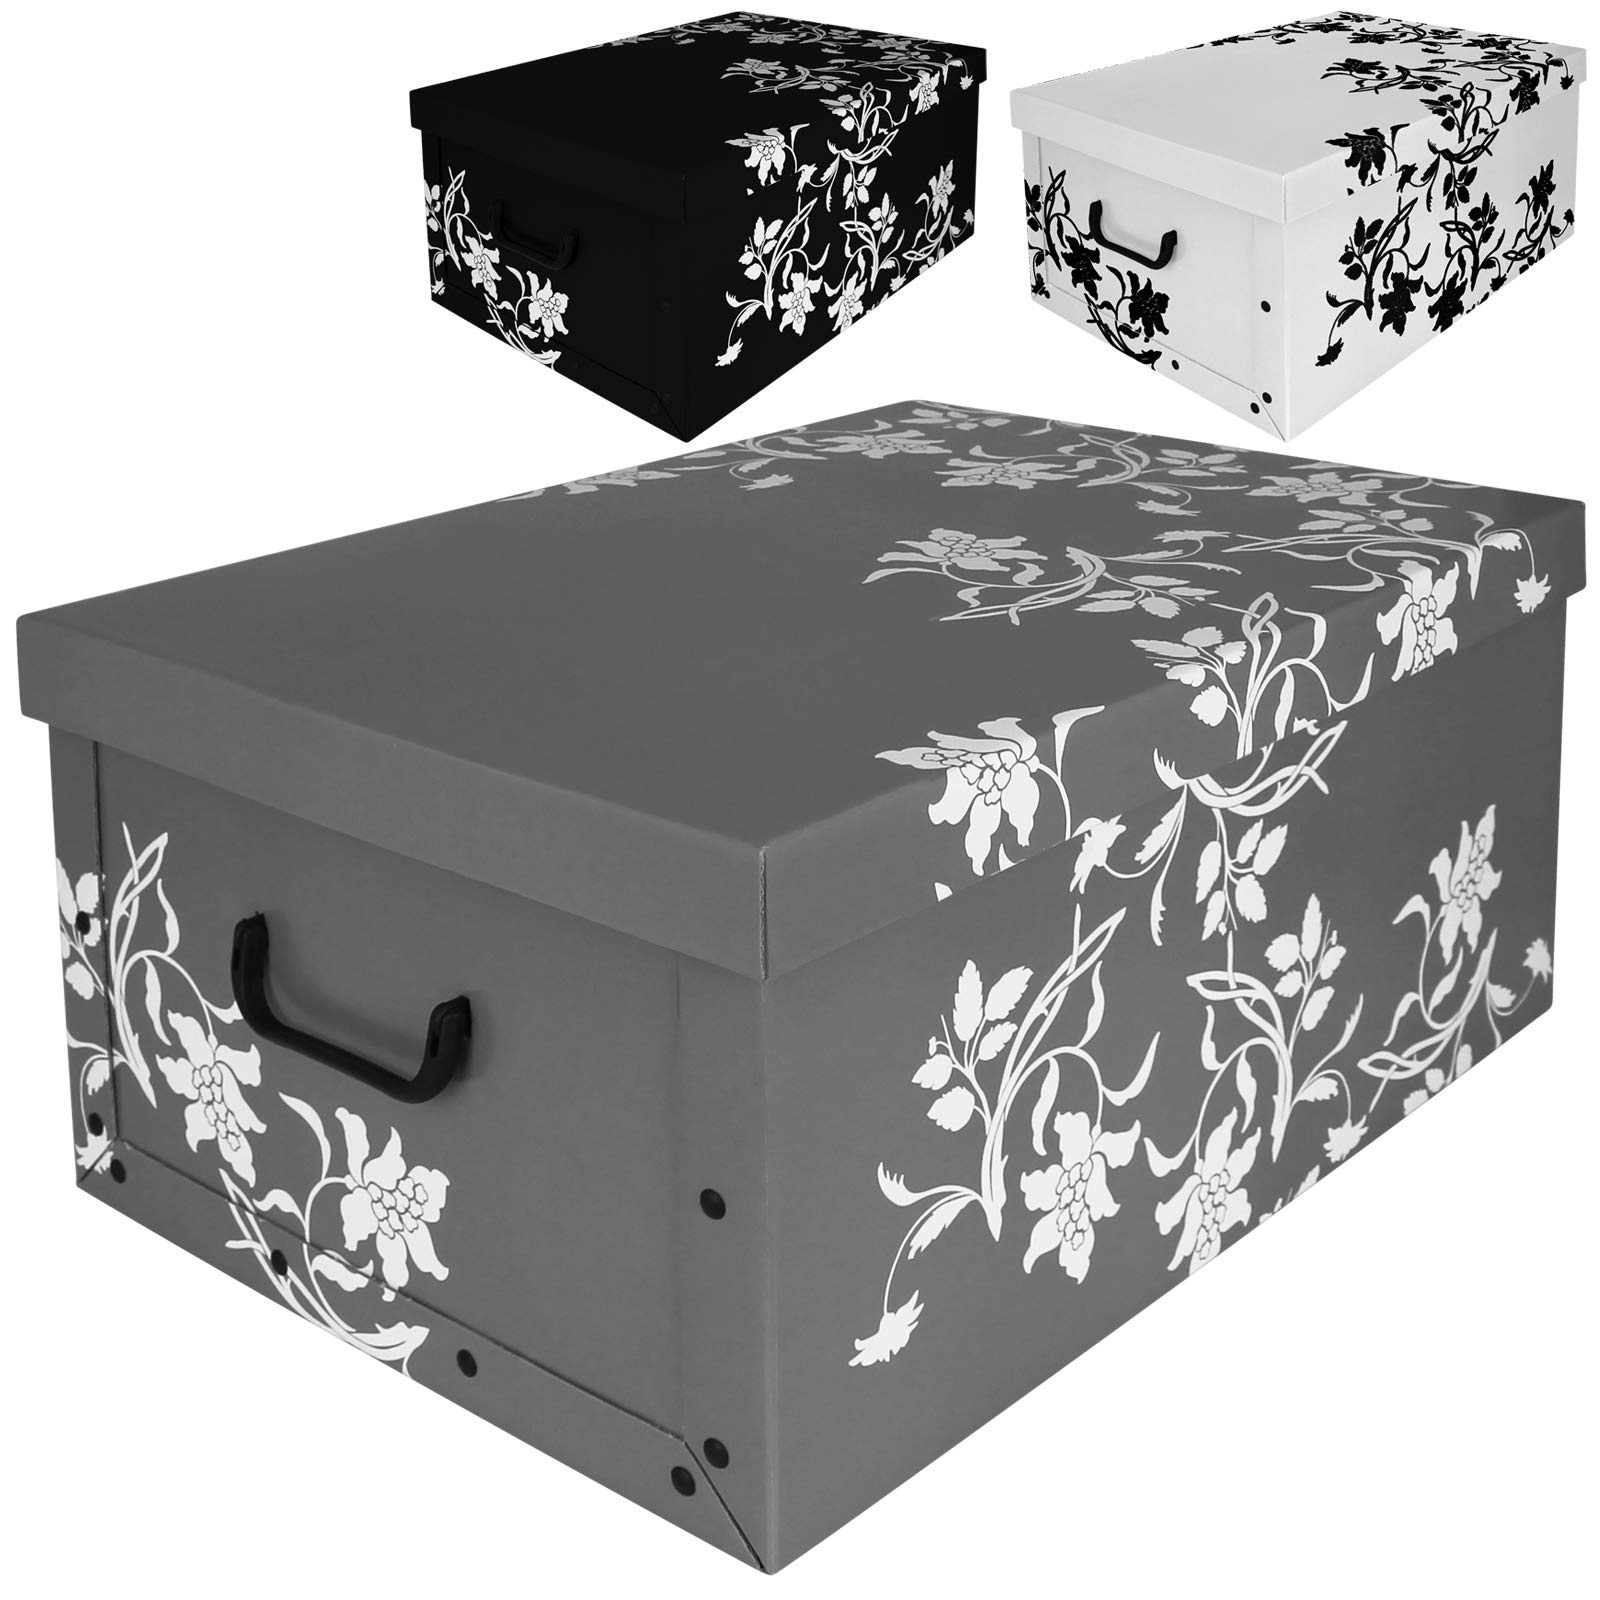 Aufbewahrungsboxen Schubladenboxen Kiste Karton Deckel Schachtel Pappe Box 